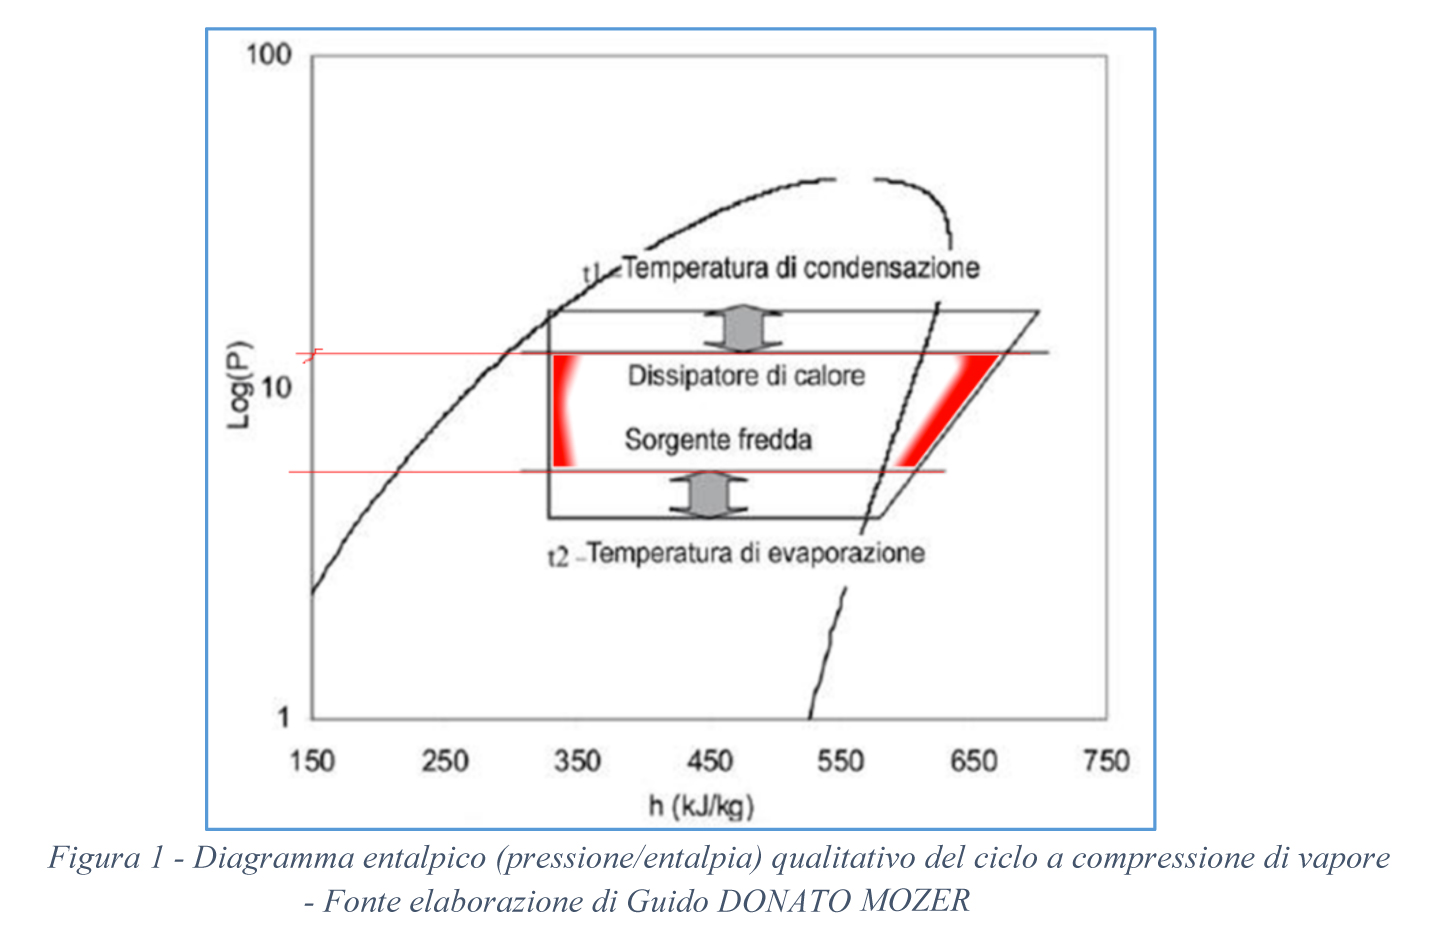 Figura 1 - Diagramma entalpico (pressione/entalpia) qualitativo del ciclo a compressione di vapore - Fonte elaborazione di Guido Donato Mozera